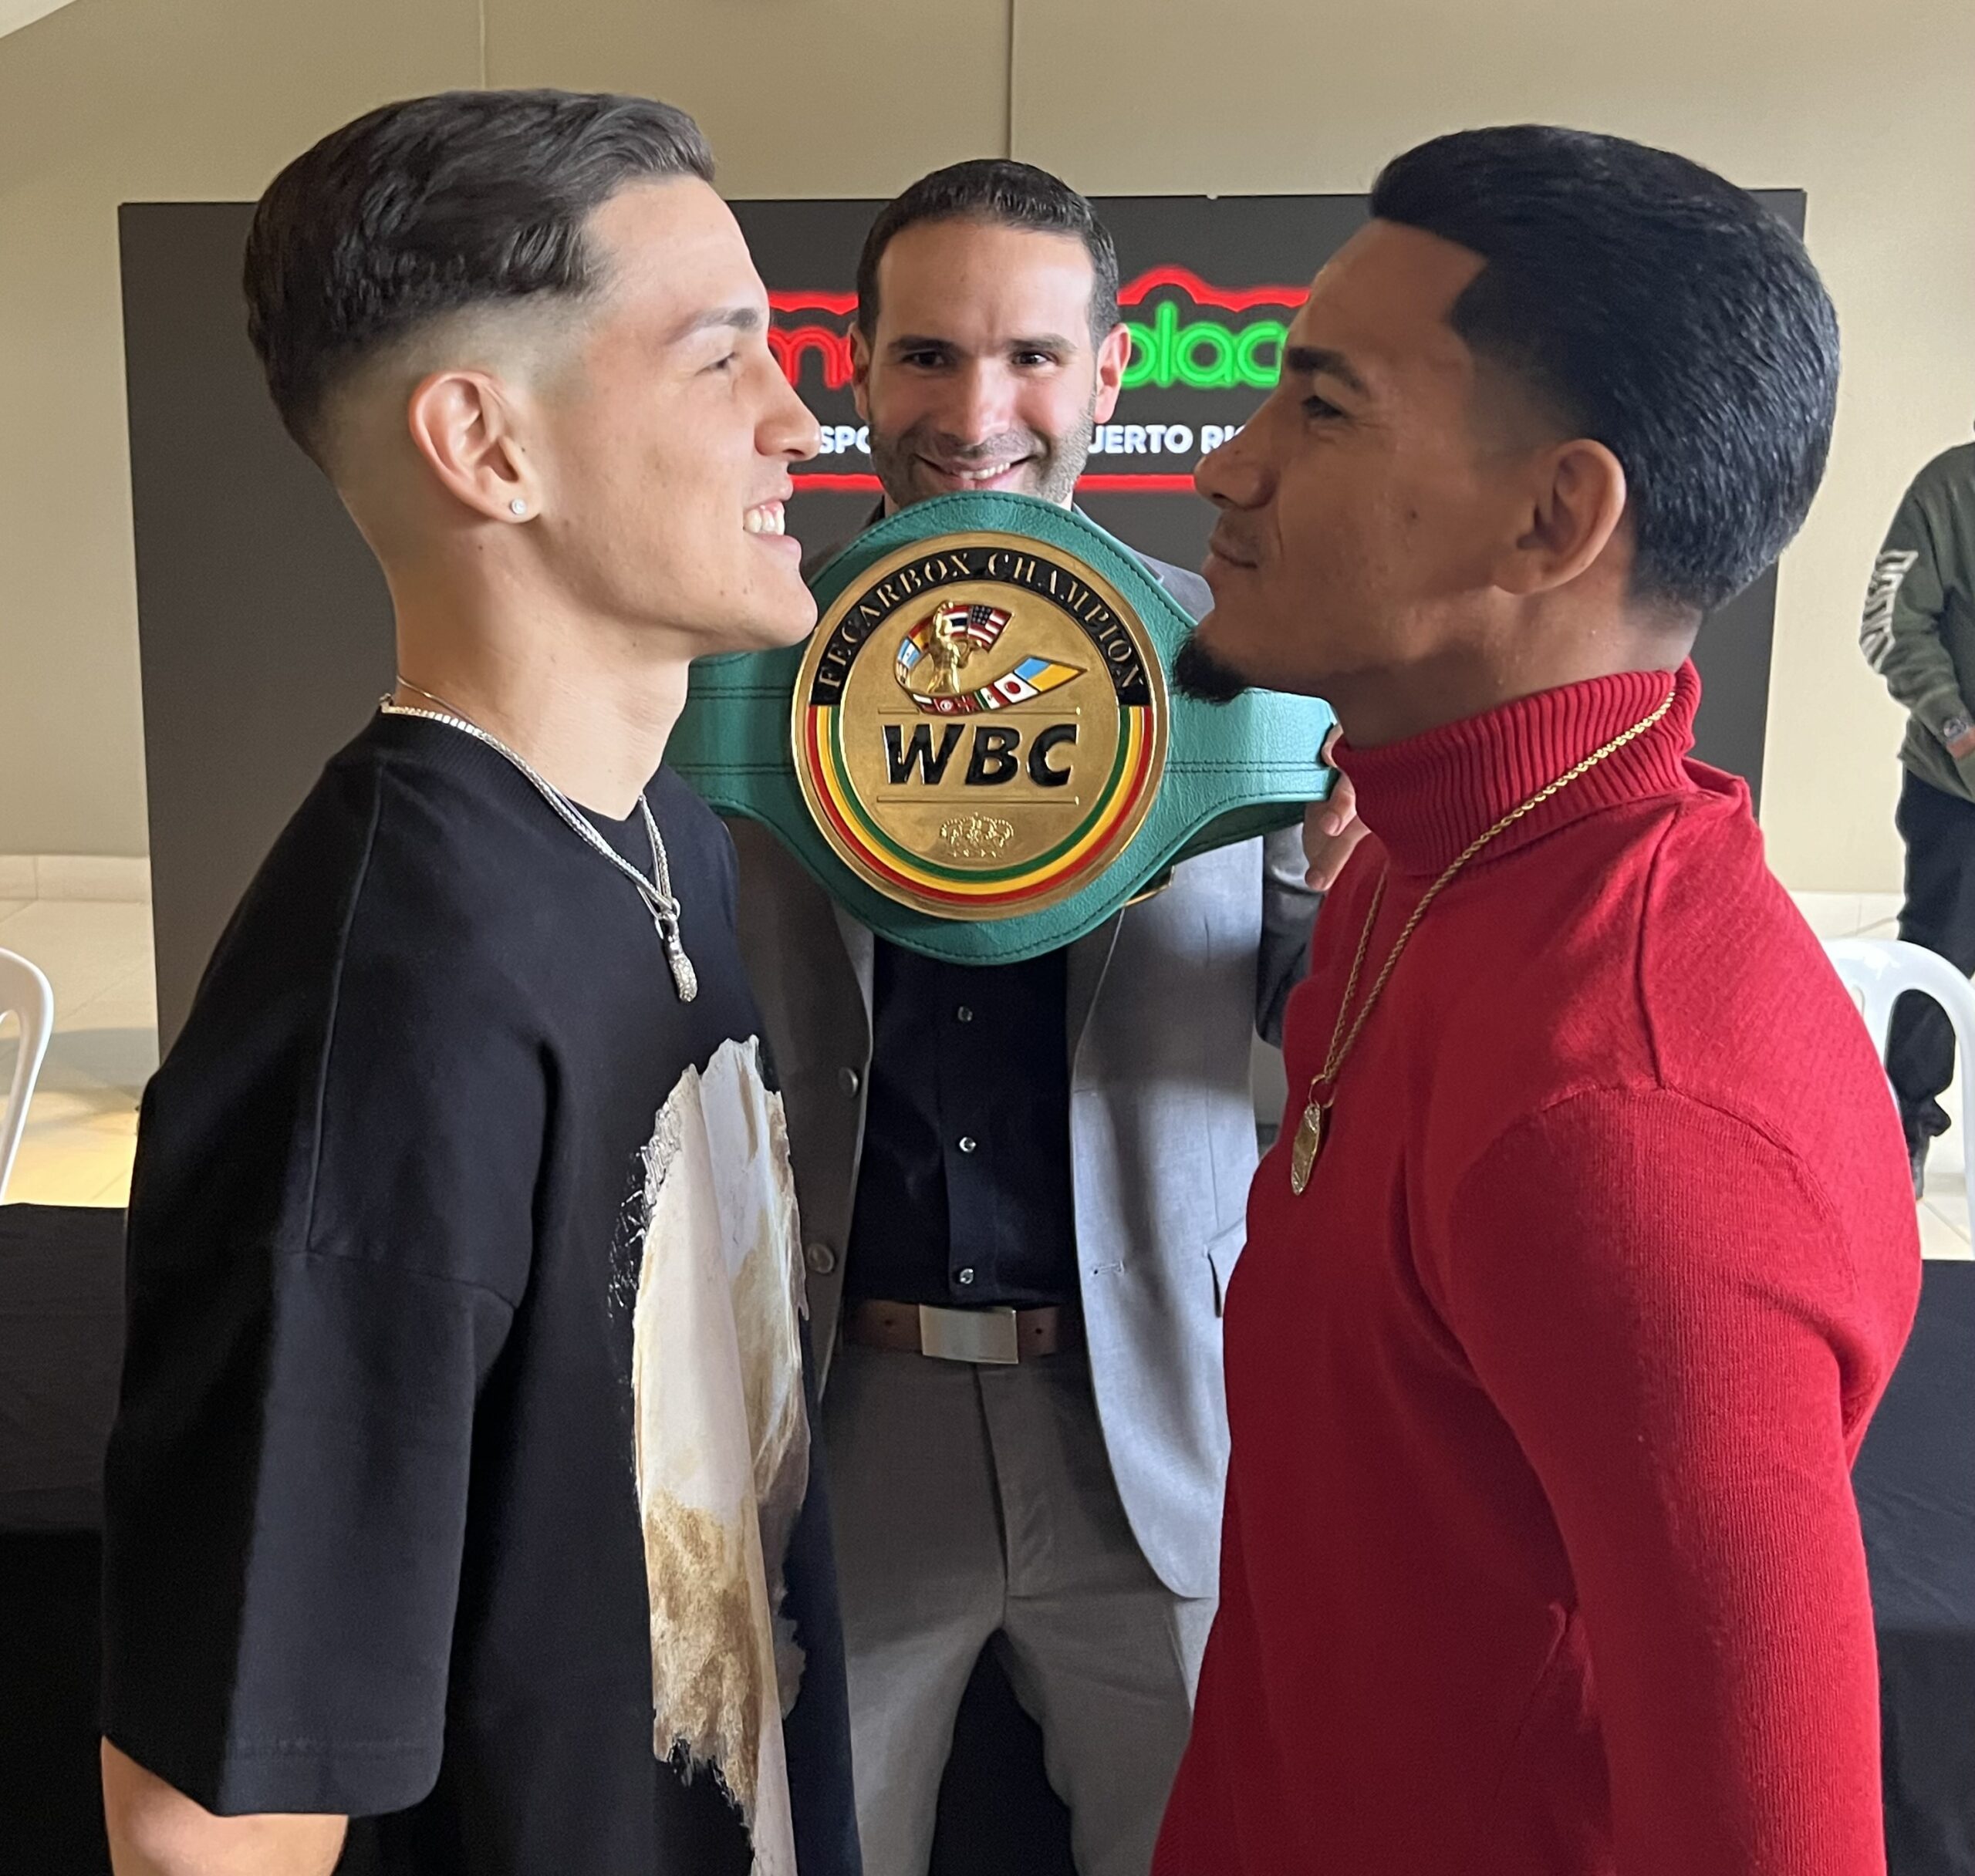 Juan “Juancito” Zayas vs Eric “Erikito” Pabón 